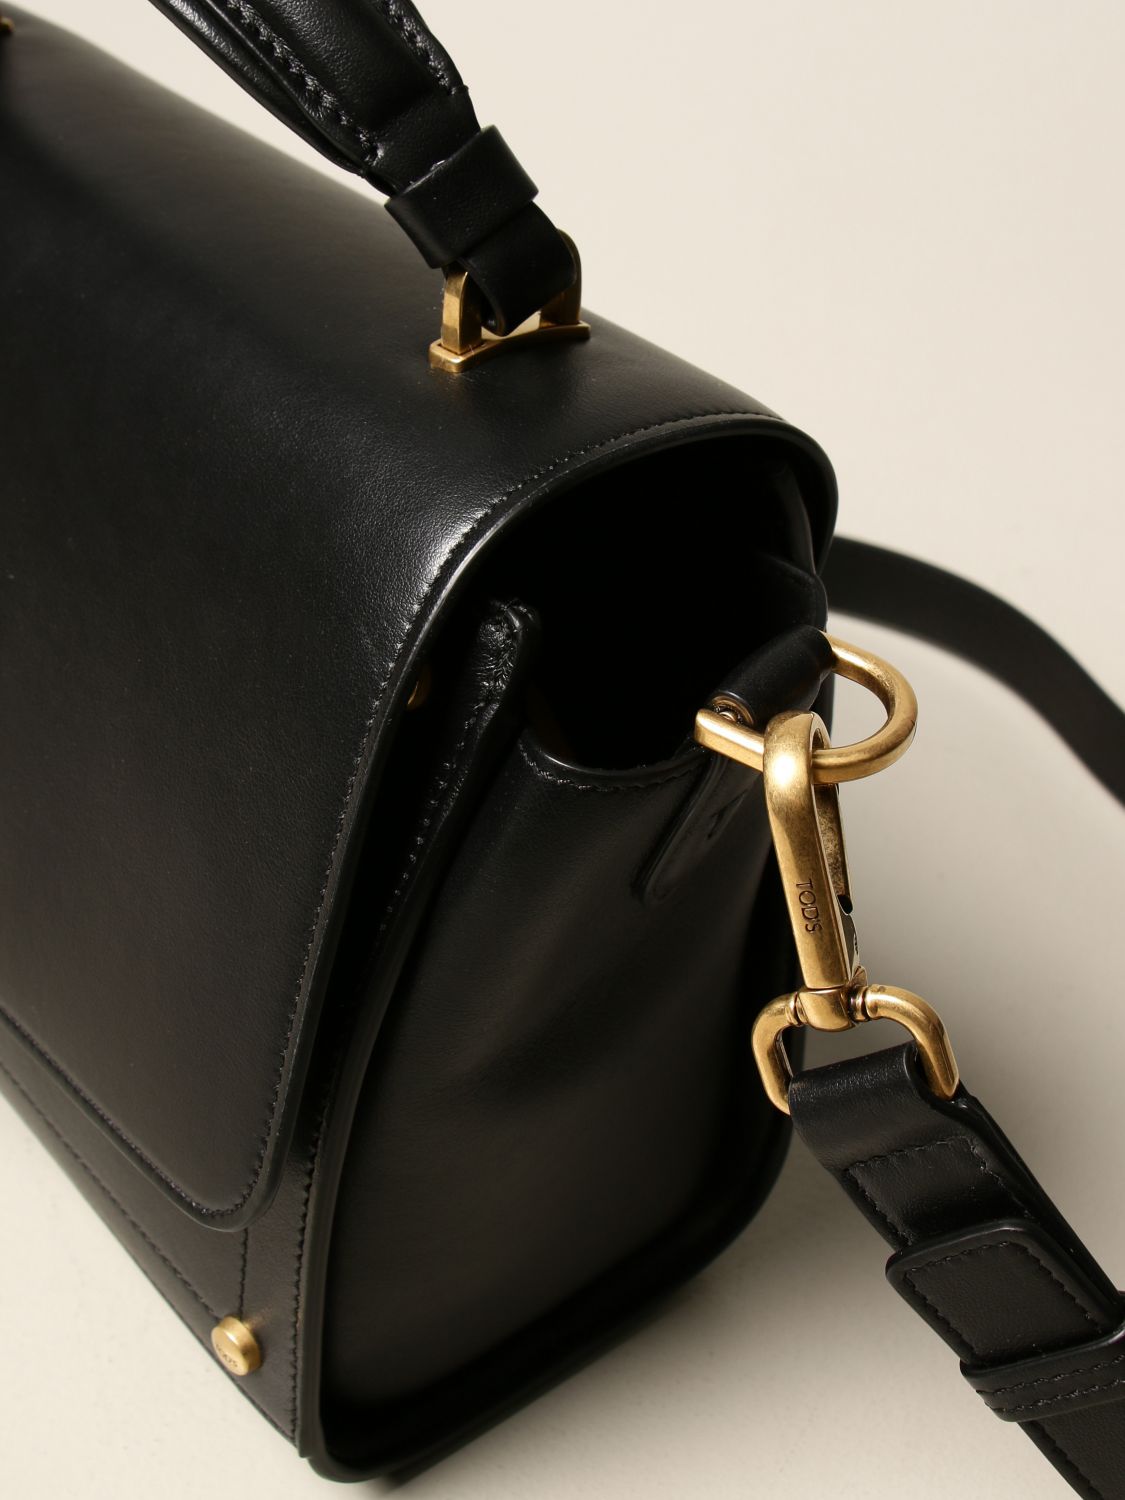 TOGO Leather Designer Tote Bag - Gold Brown – msncraft